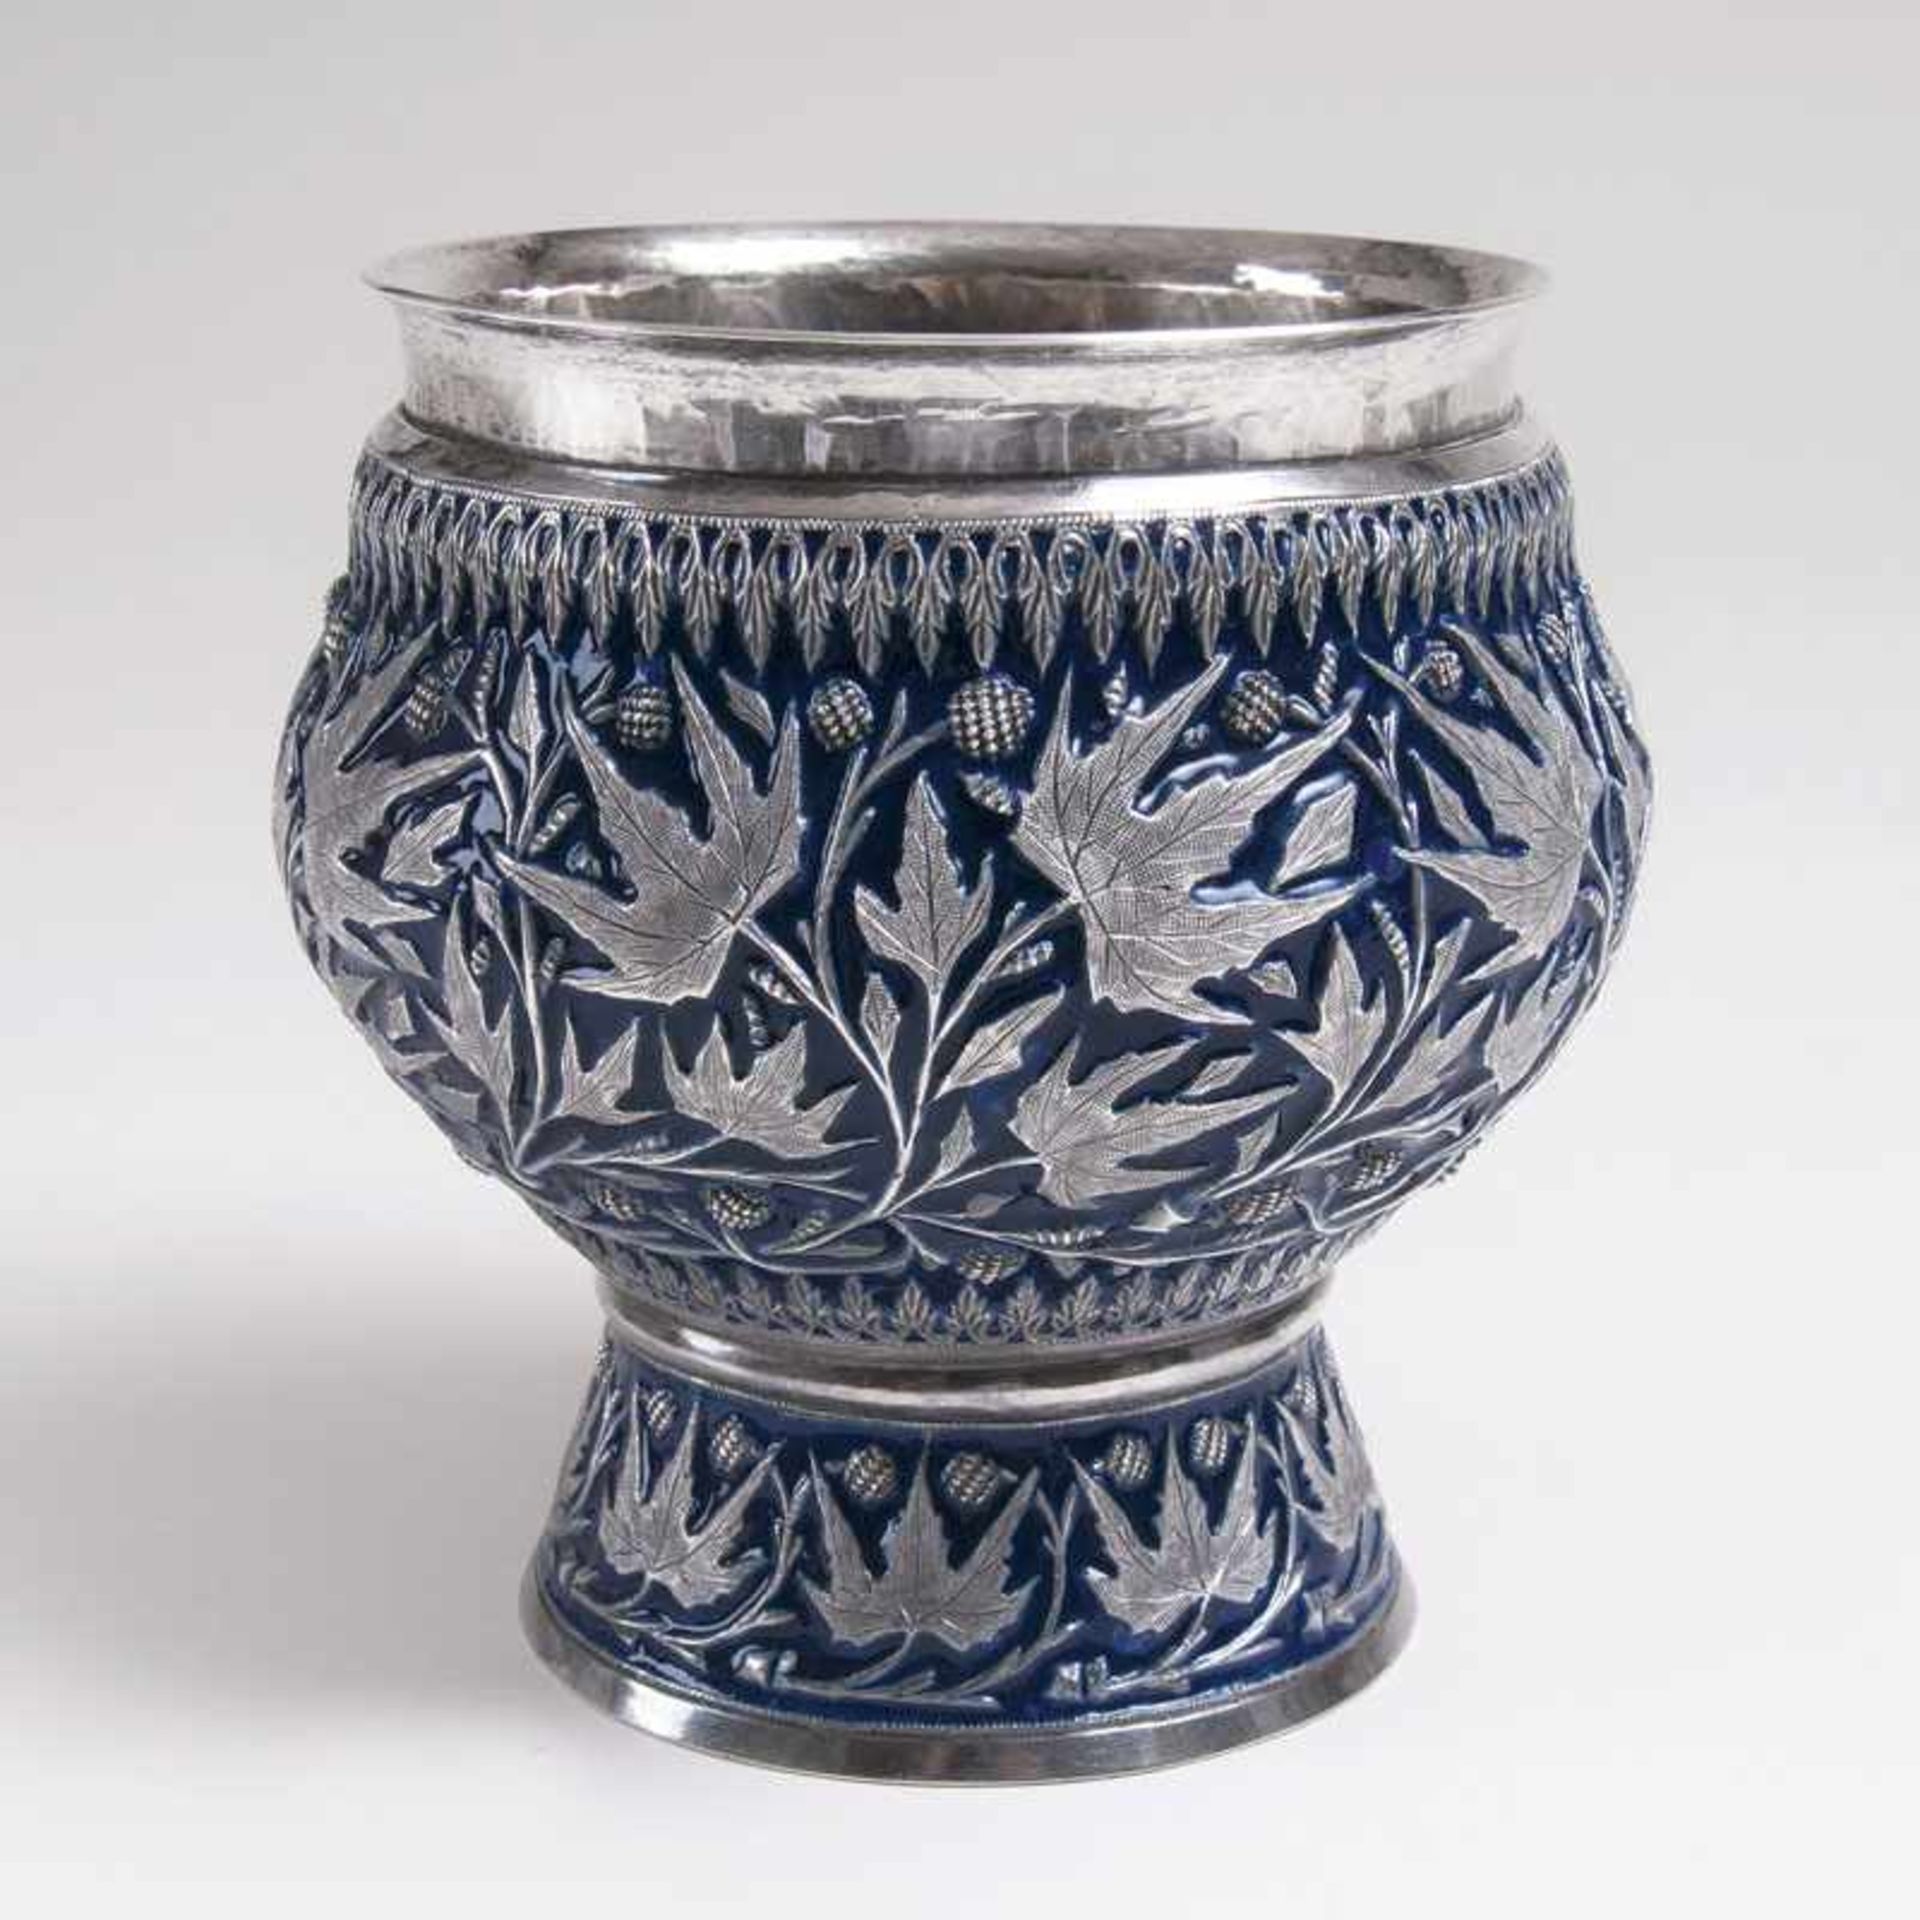 Silber-Vase mit floralem Dekor und Emaille Südostasien, Anfang 20. Jh. Silber, kobaltblau